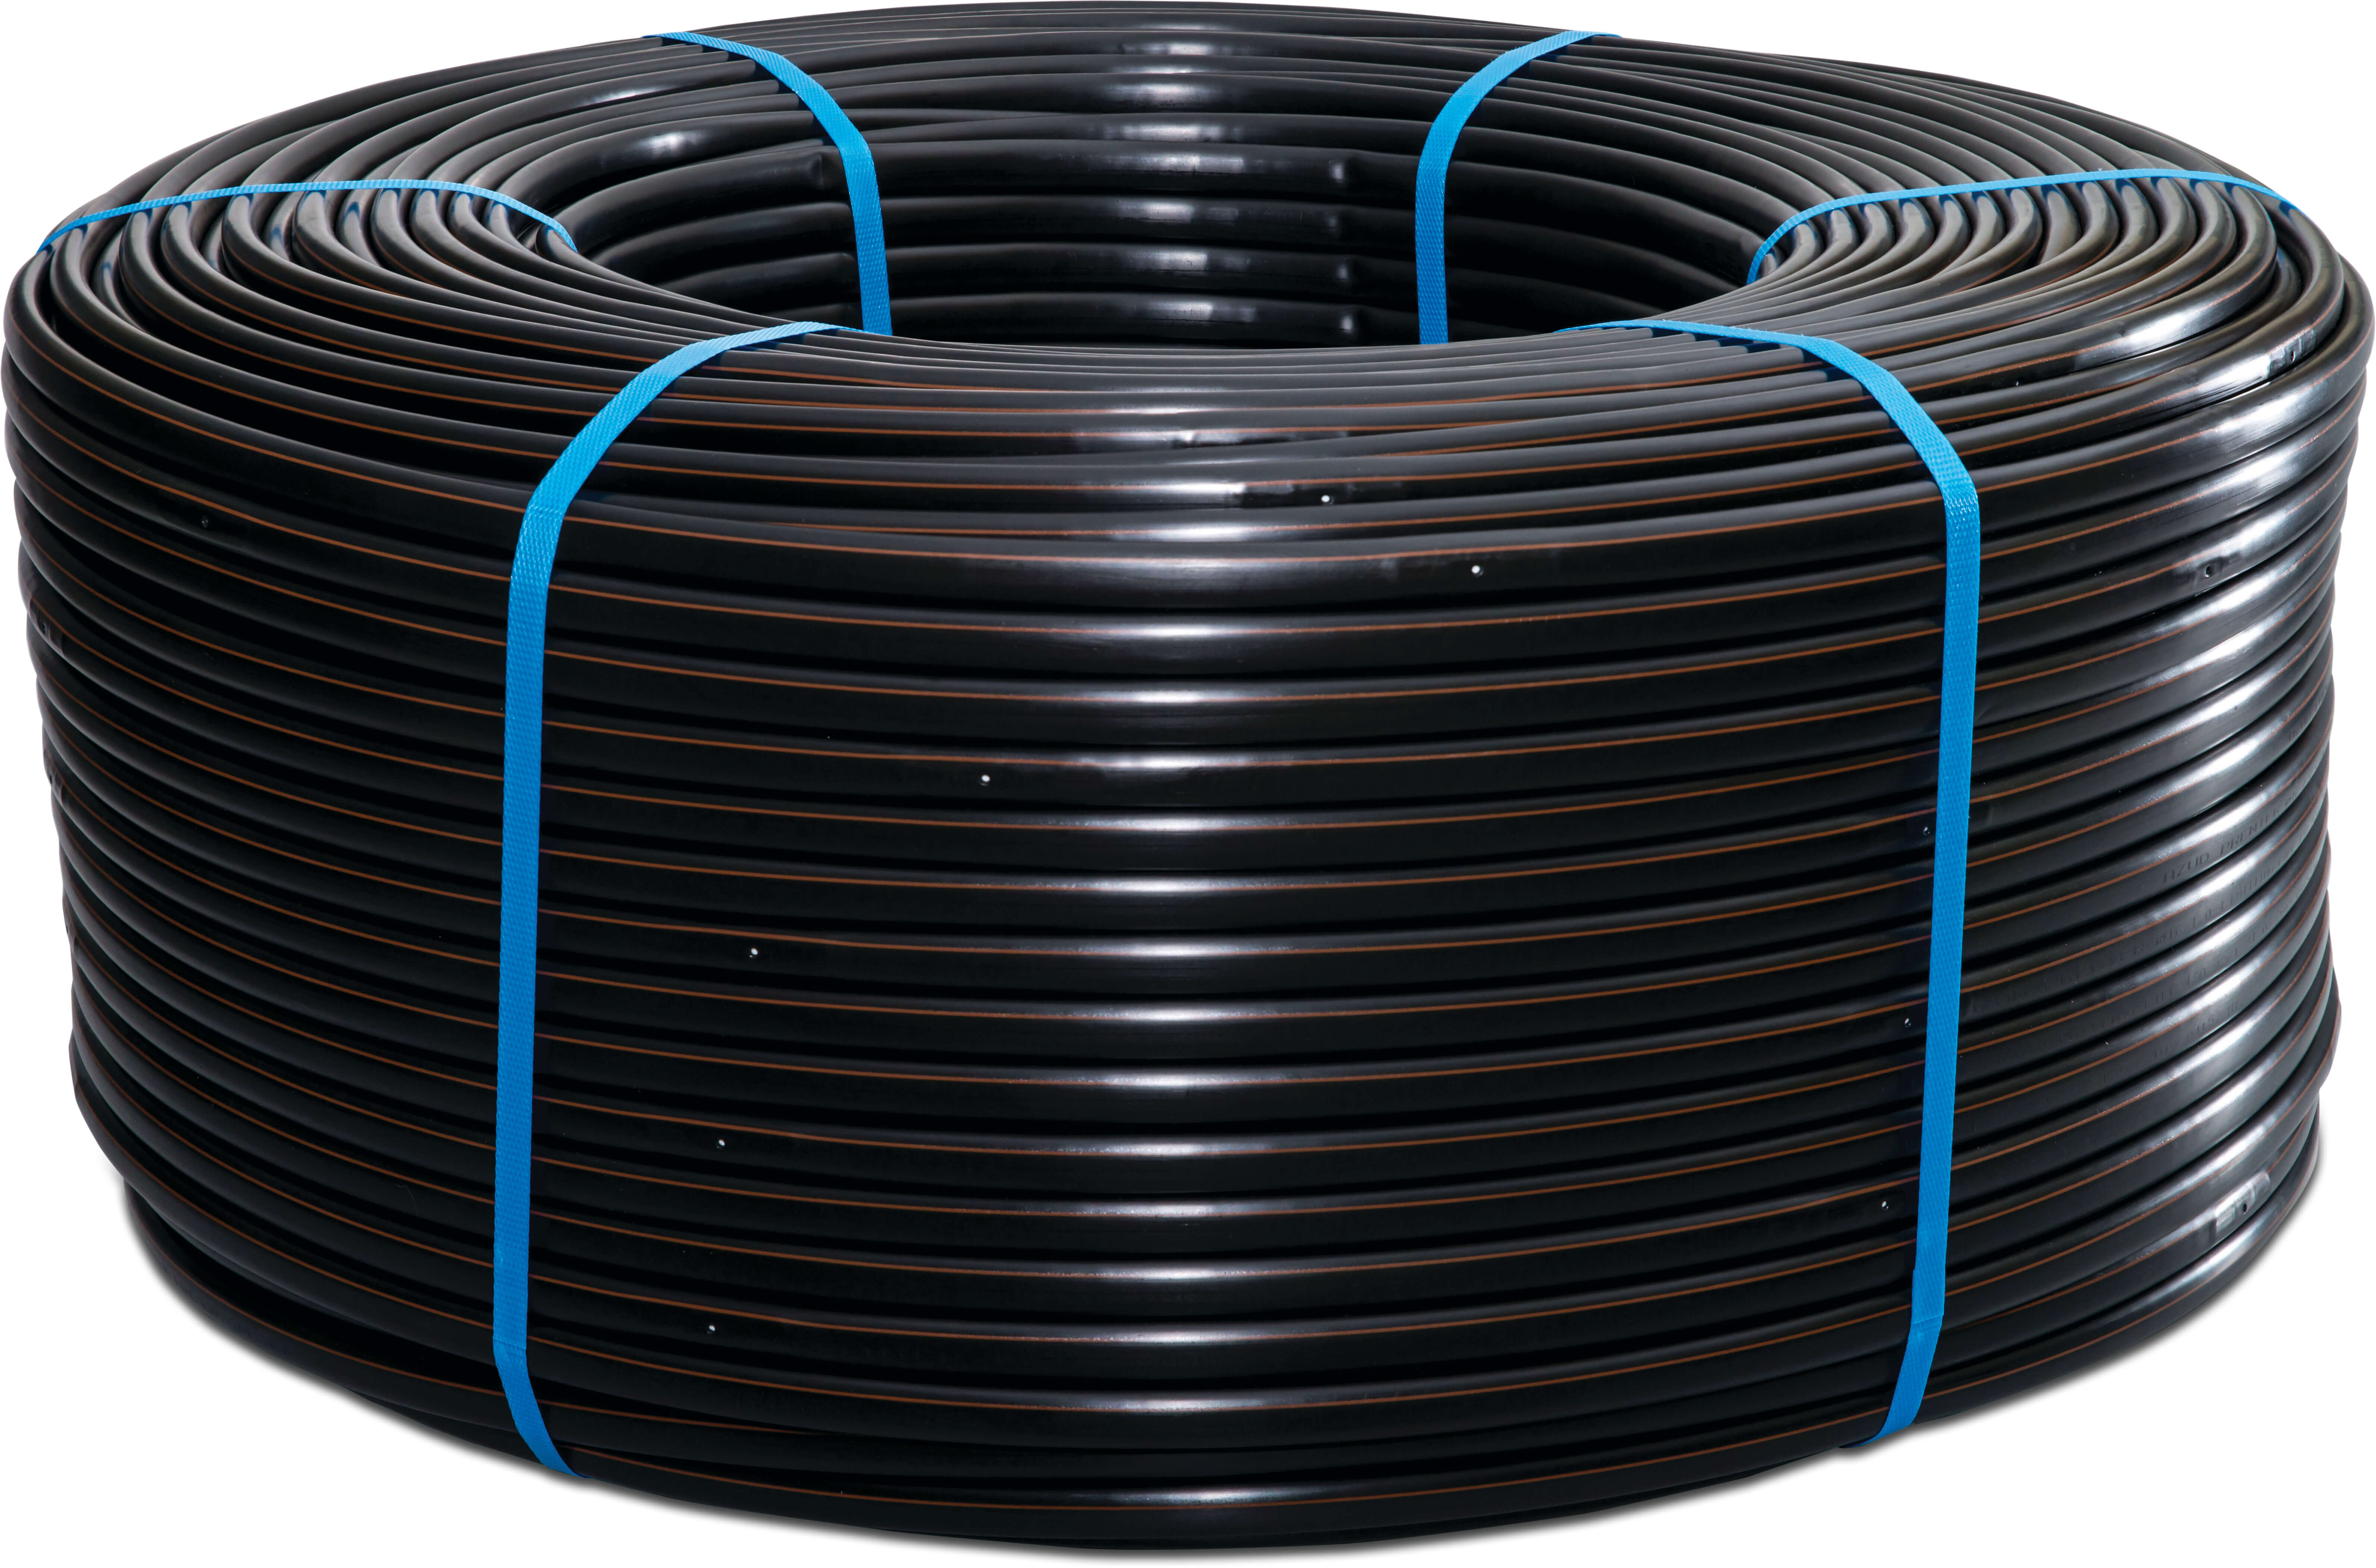 Azud Drip irrigation hose PE 20 mm x 1,2 mm 1ltr/h 20cm black 250m type Premier PC AS